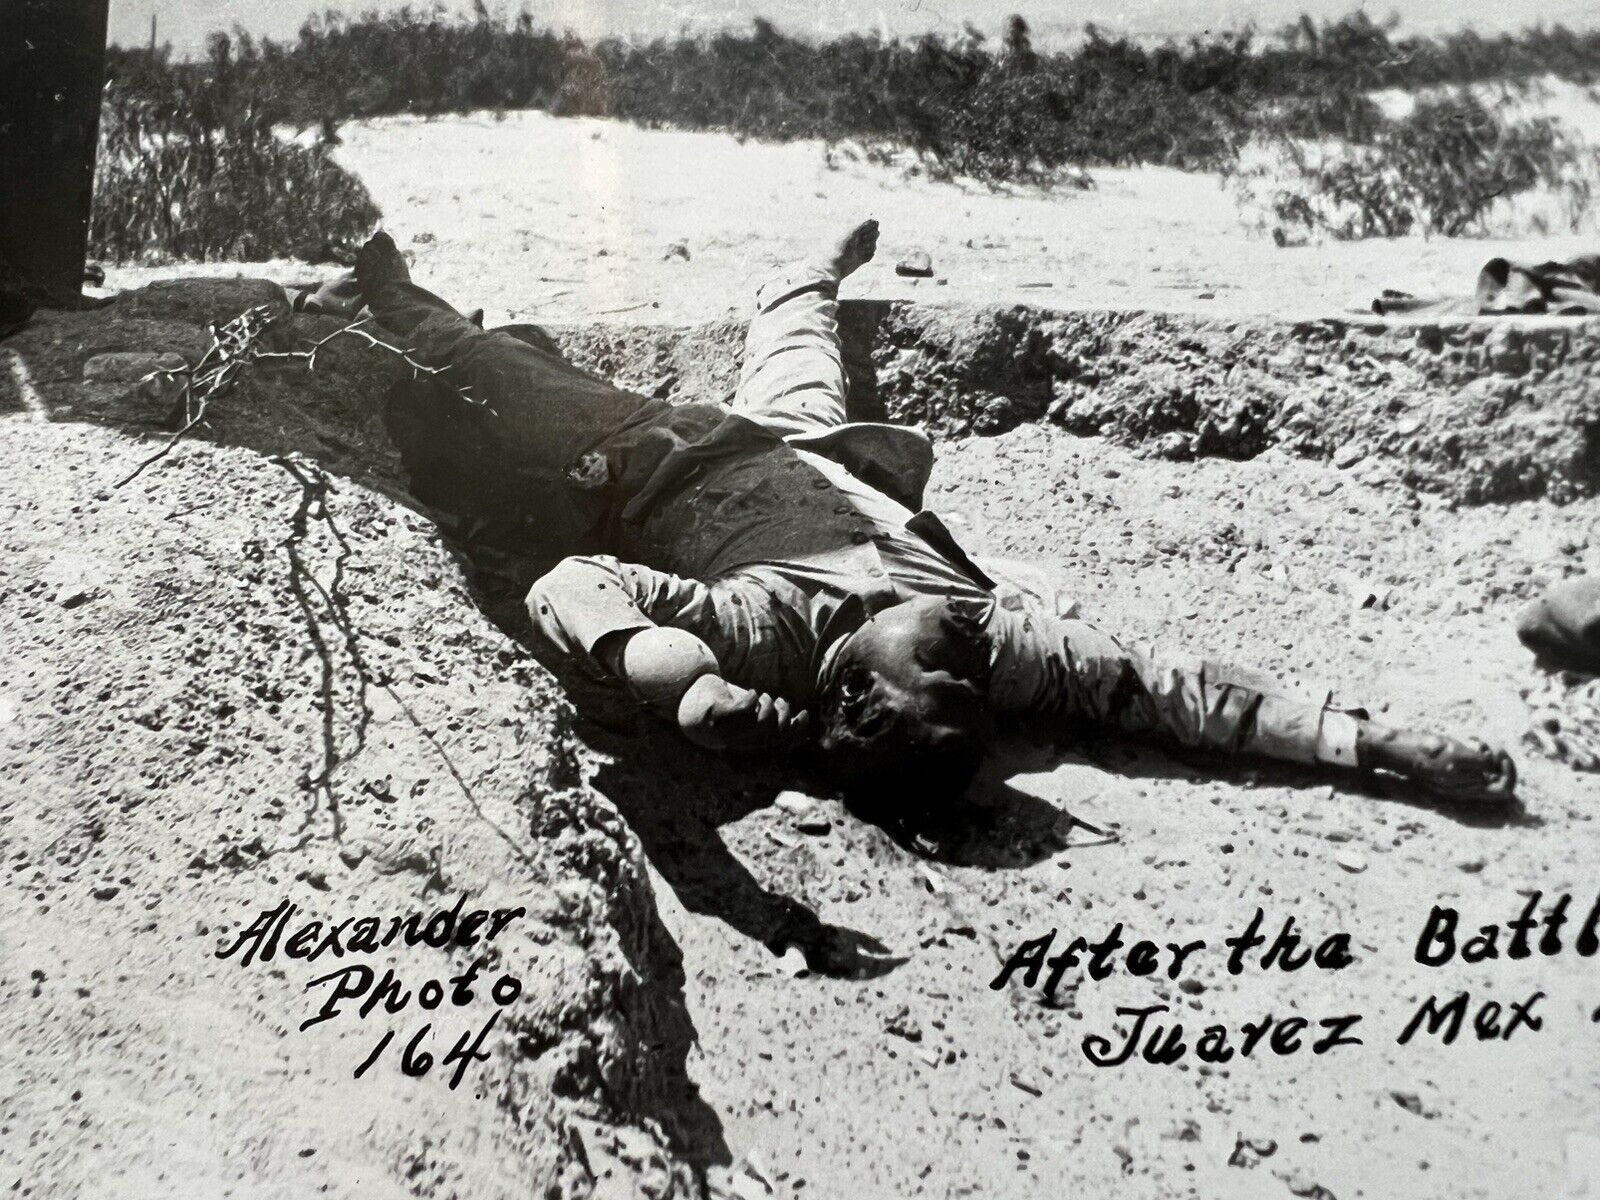 Vintage Historical Photograph “After The Battle Juarez Mexico” 1911